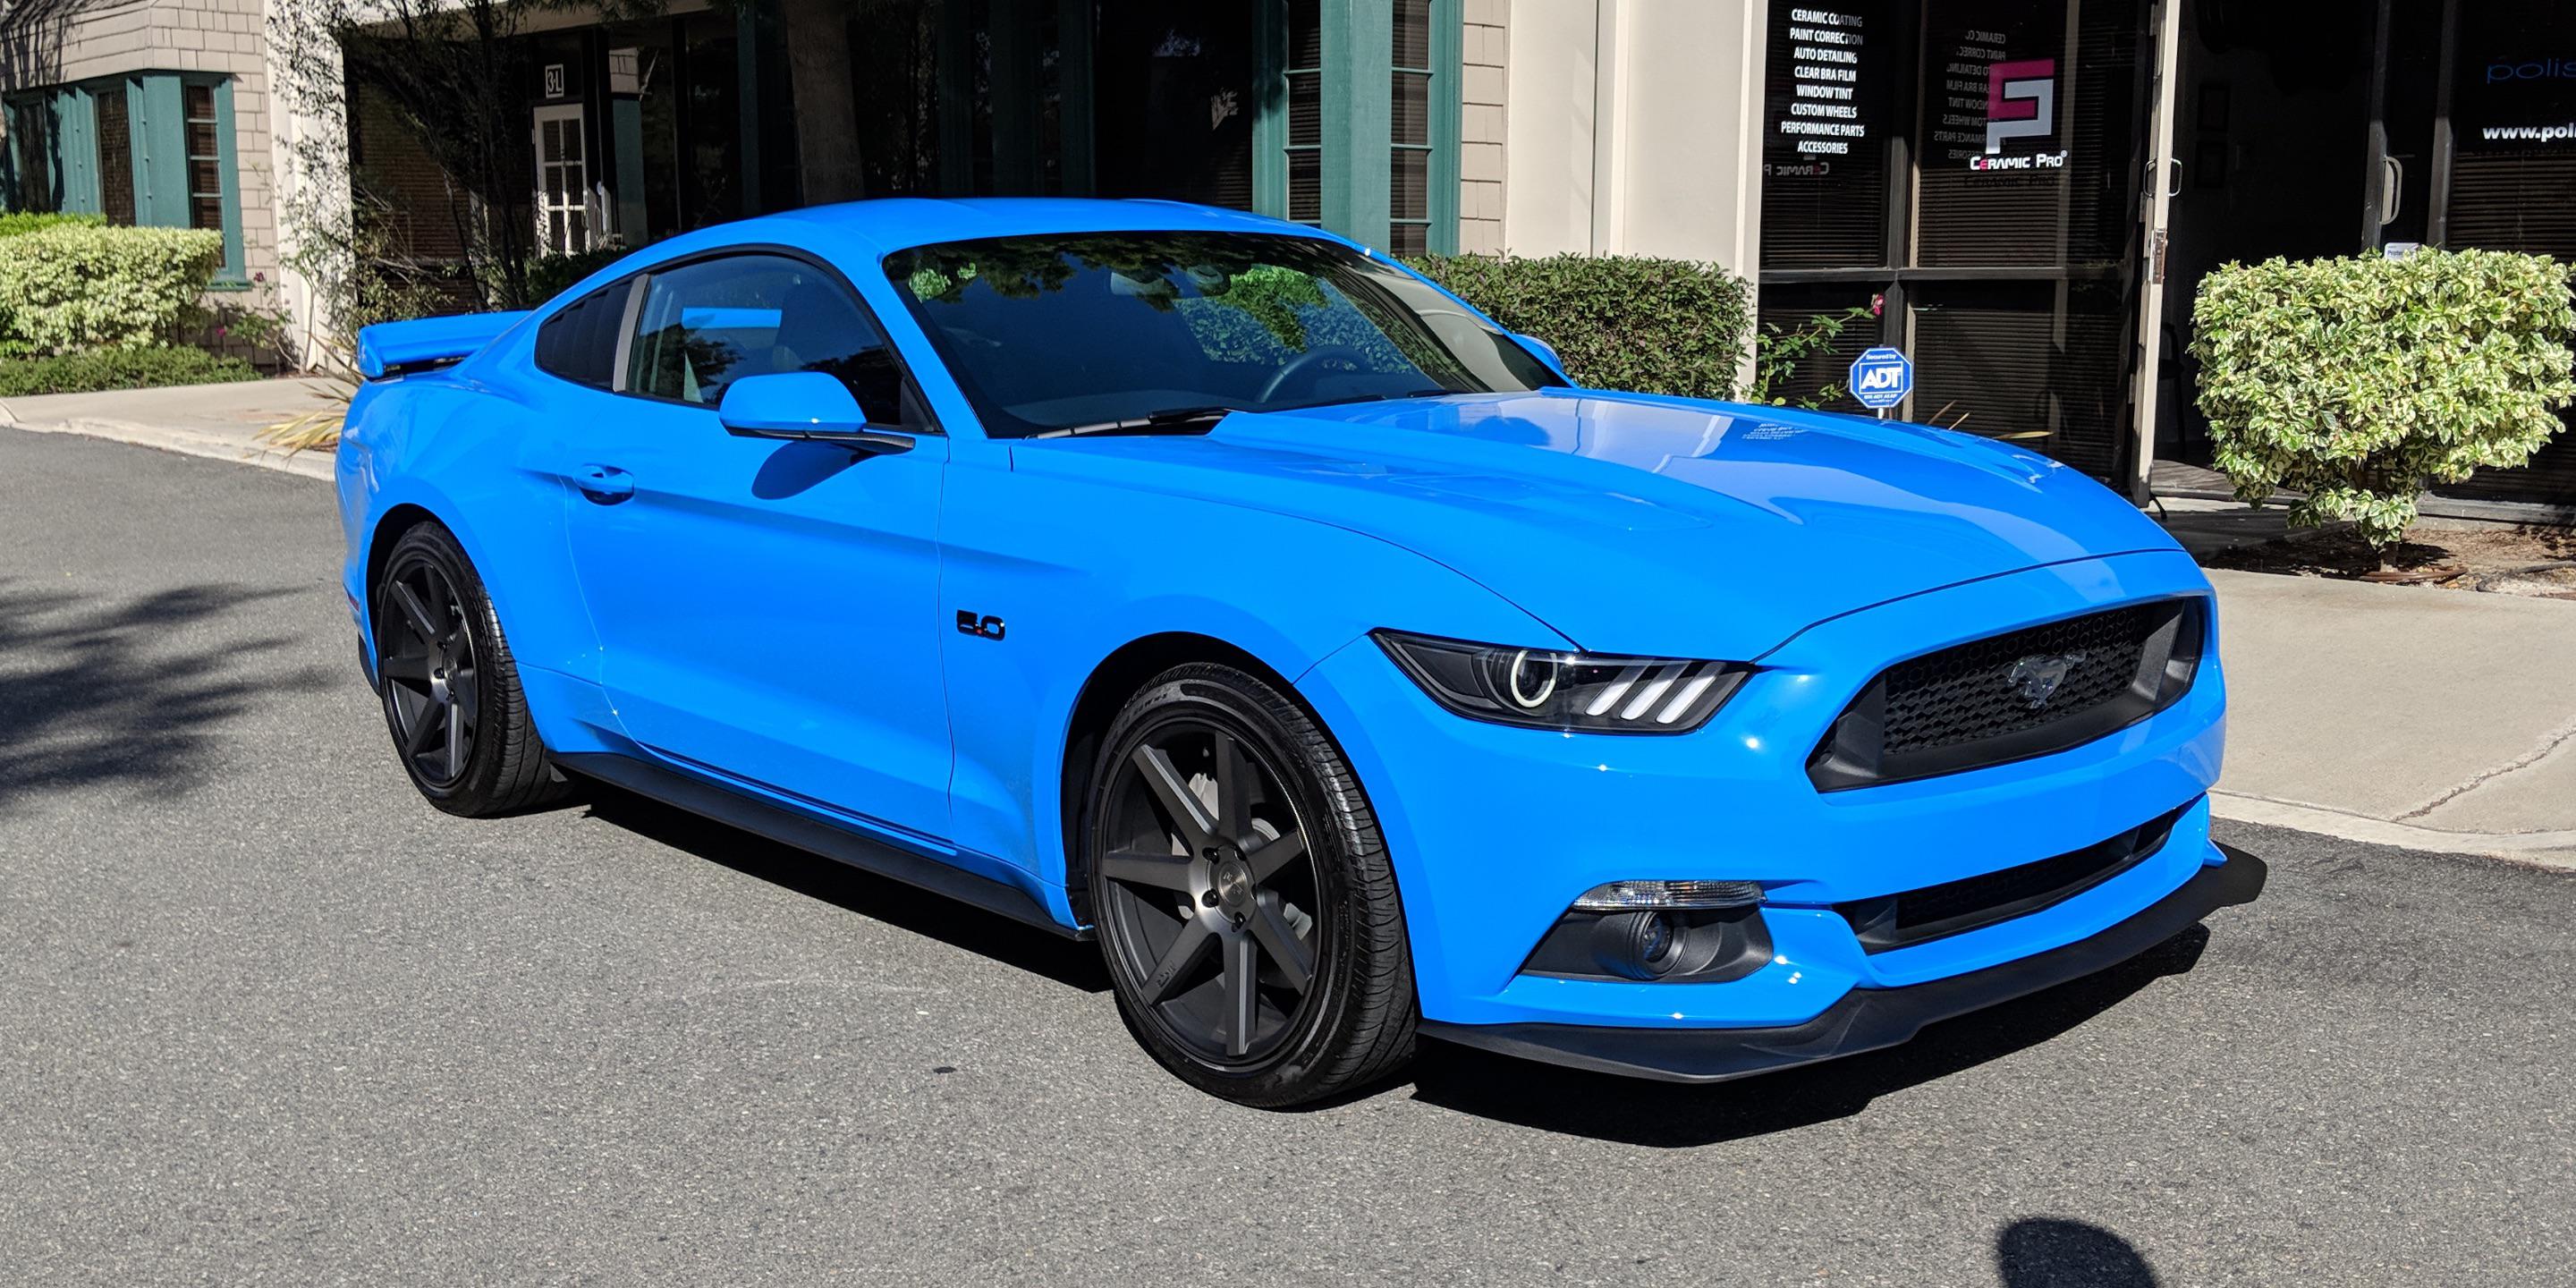 Машина 0.5. Форд Мустанг 2017 синий. Форд Мустанг ГТ 2017. Форд Мустанг 2015 синий. Ford Mustang gt 2015 синий.